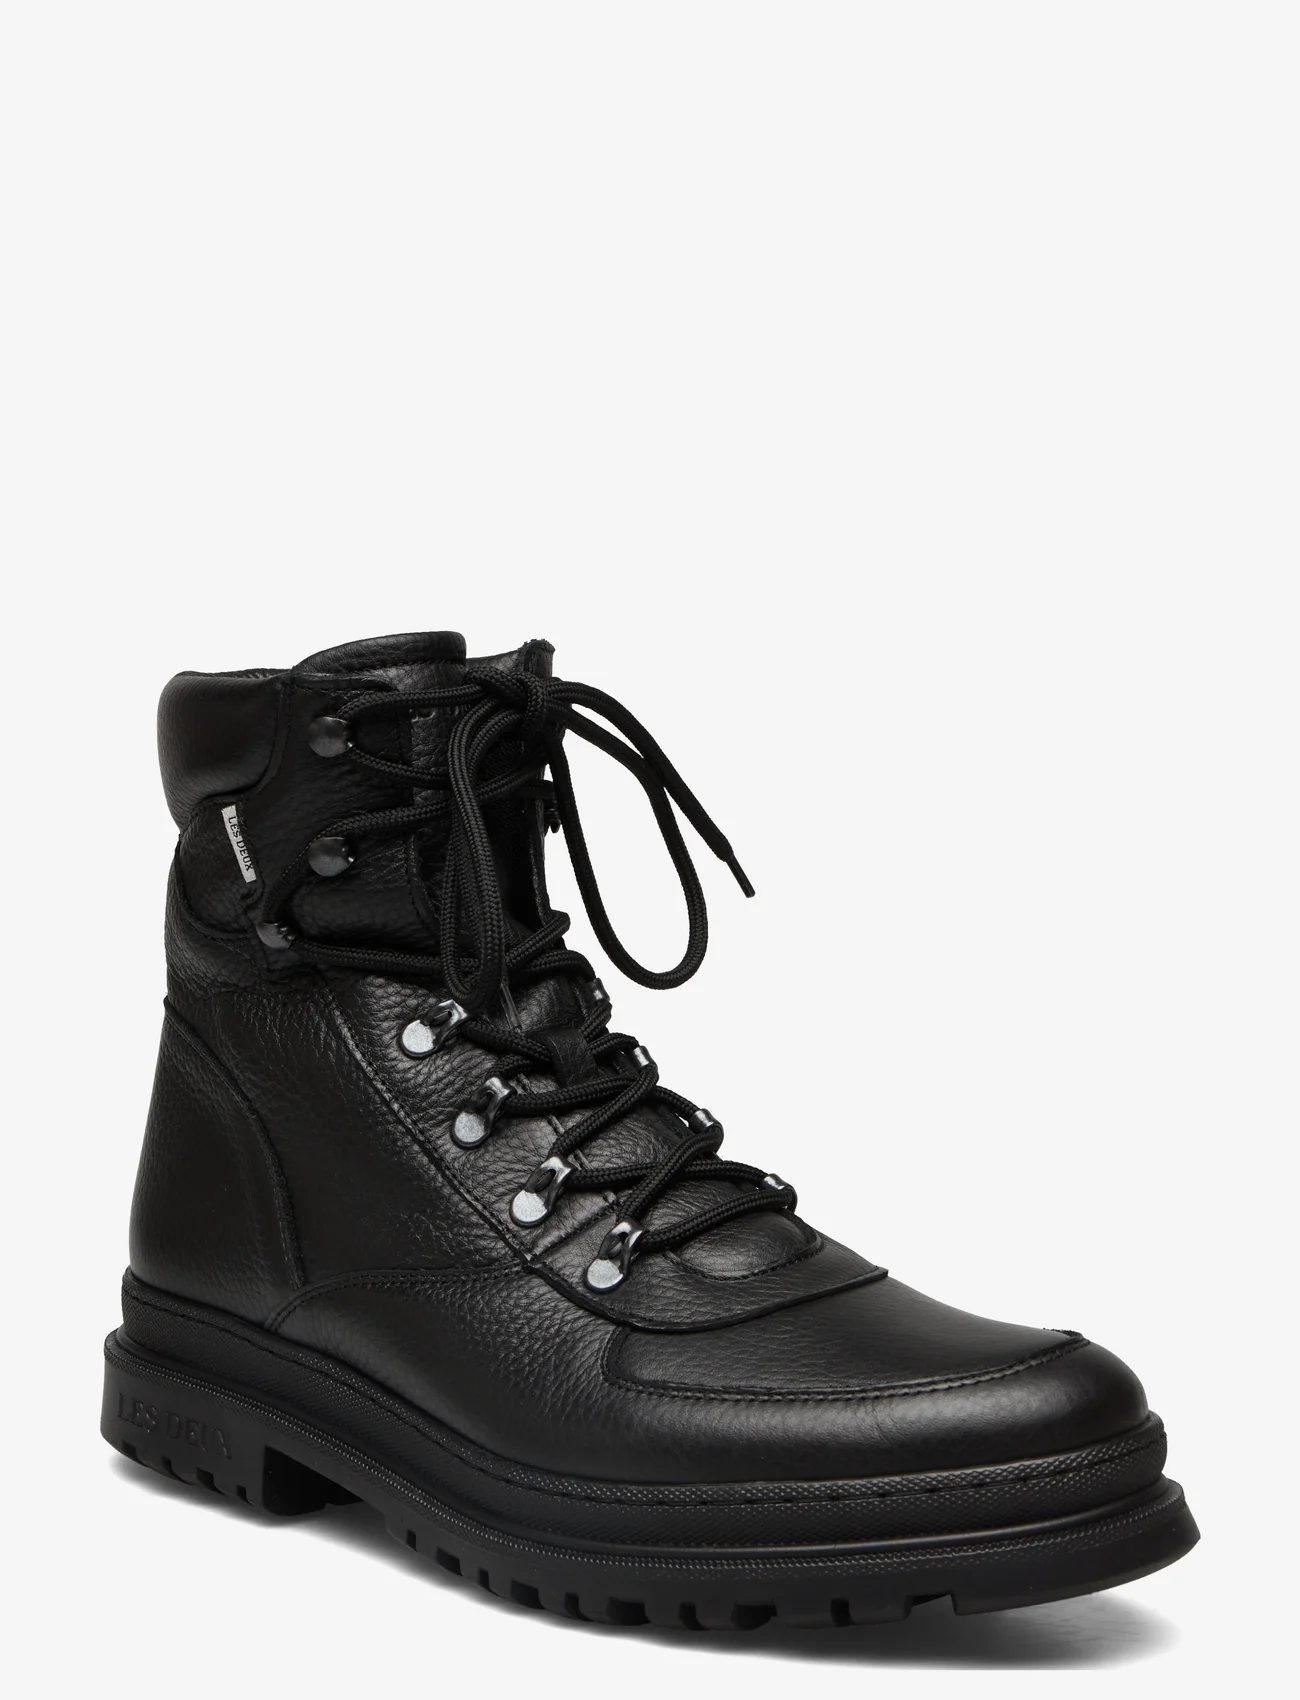 Les Deux - Tyler Leather Desert Boot - lace ups - black - 0